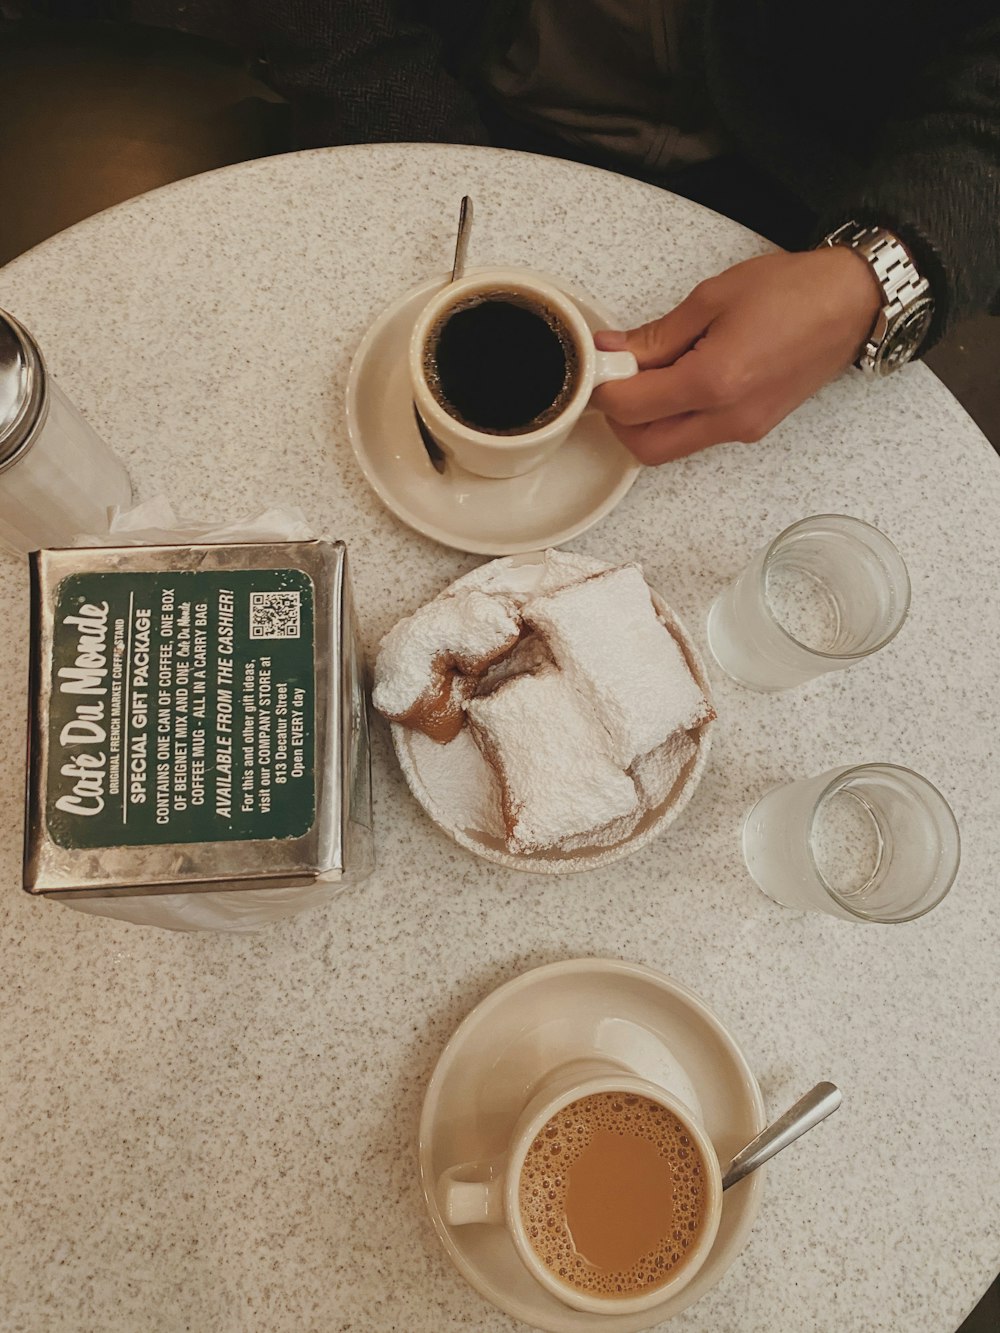 スライスしたケーキの近くの白いセラミックマグカップに入ったブラックコーヒー、コップに入った水、テーブルの上の透明な調味料シェーカー